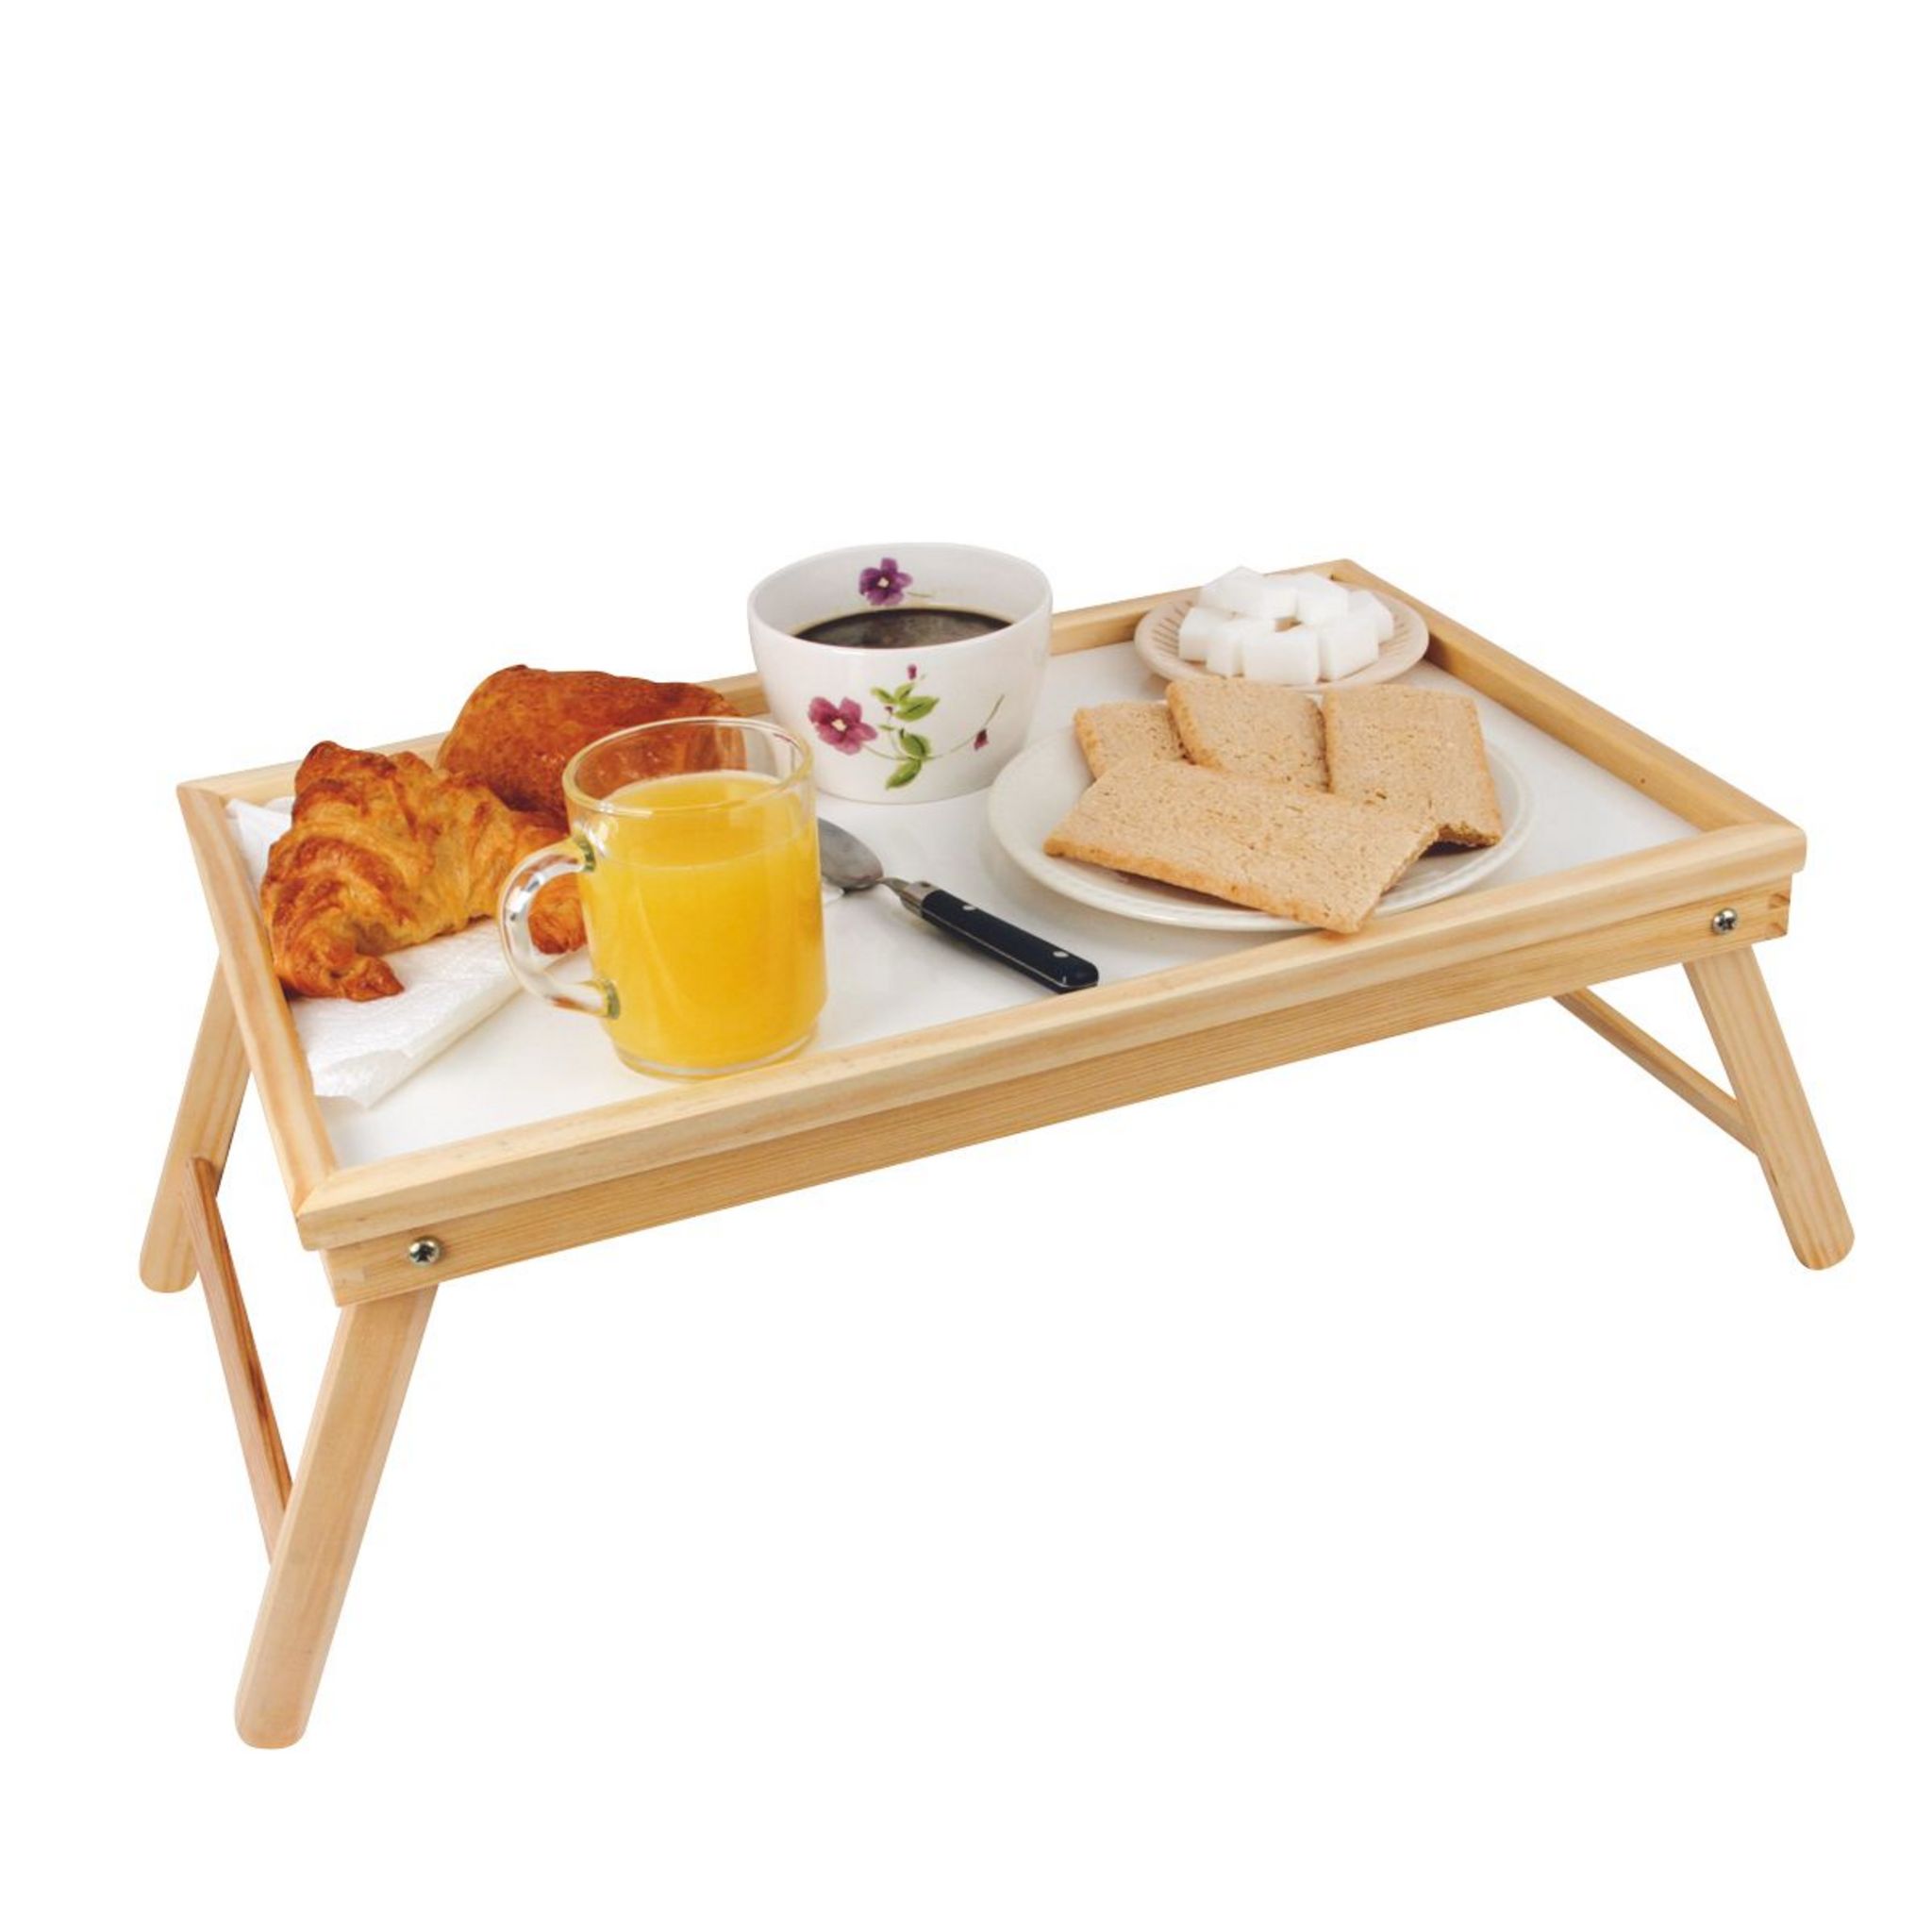 Plateau petit déjeuner au lit - 50 x 30 cm - Table de lit